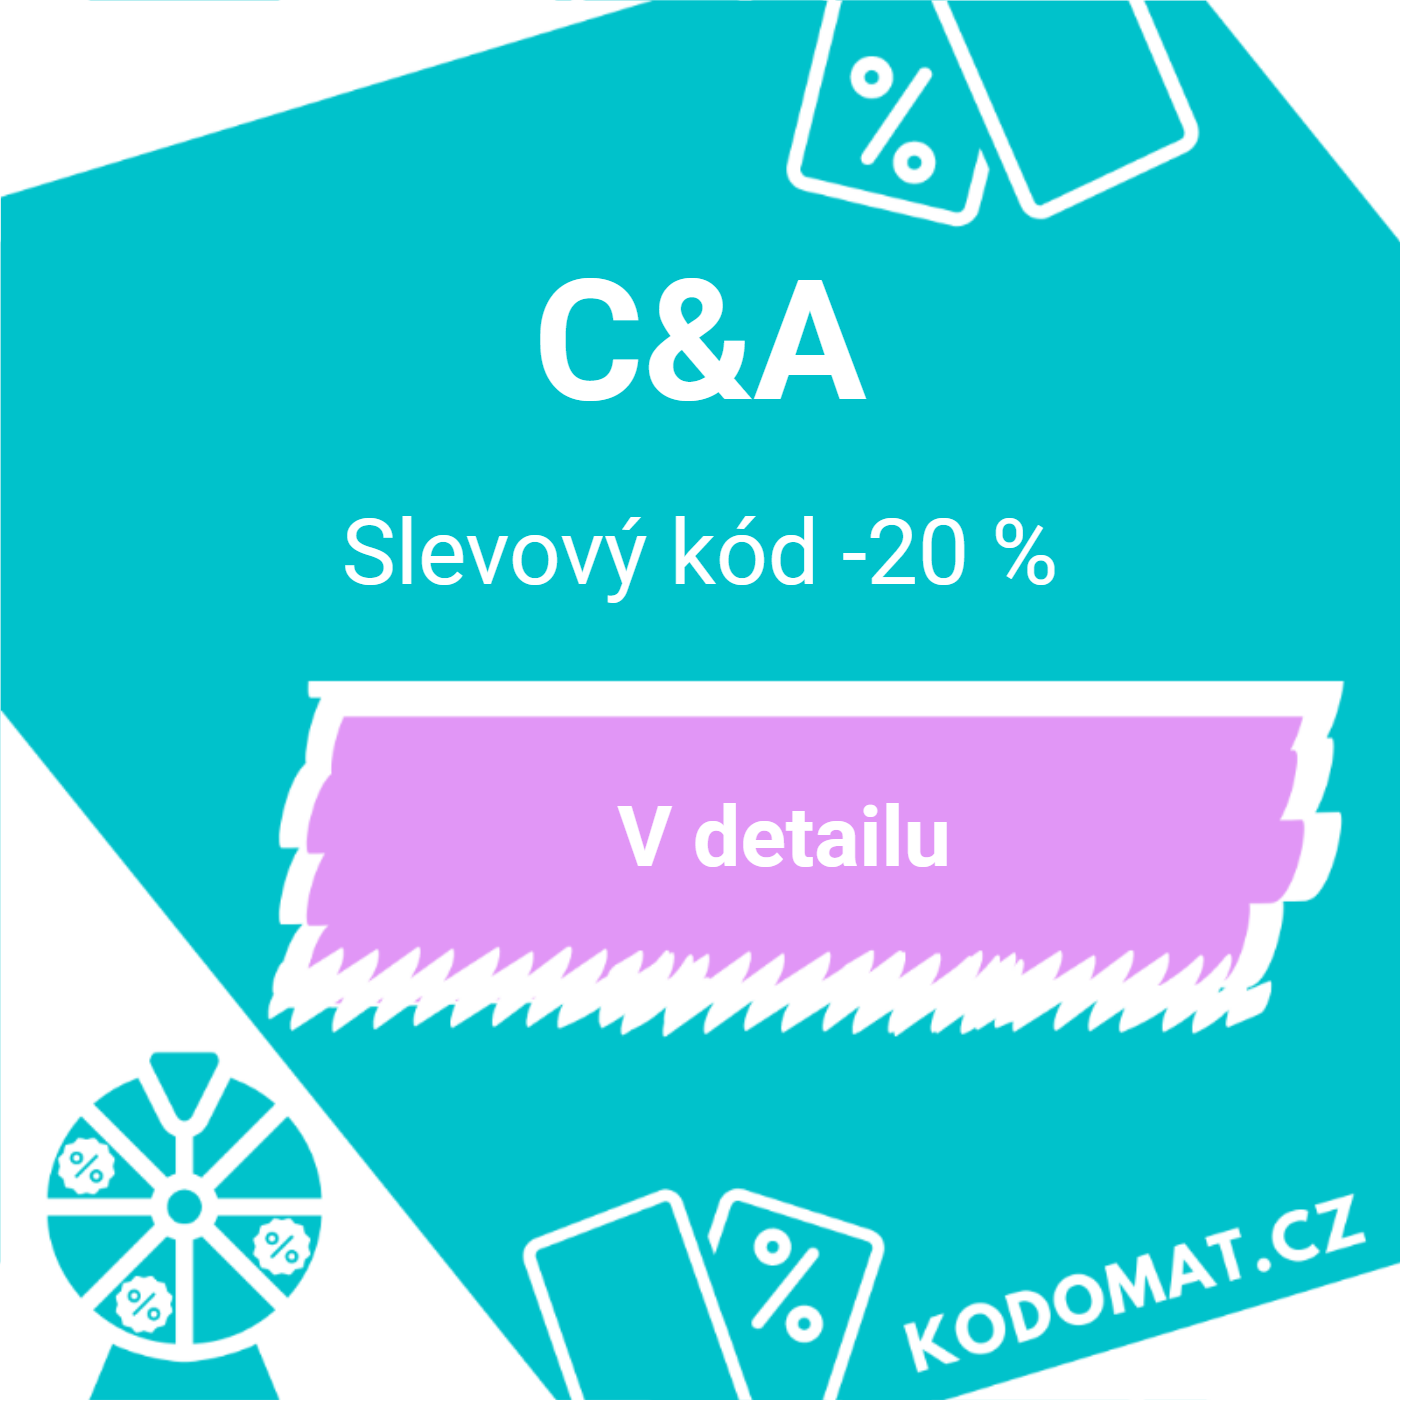 C&A sleva: Slevový kód -20 %